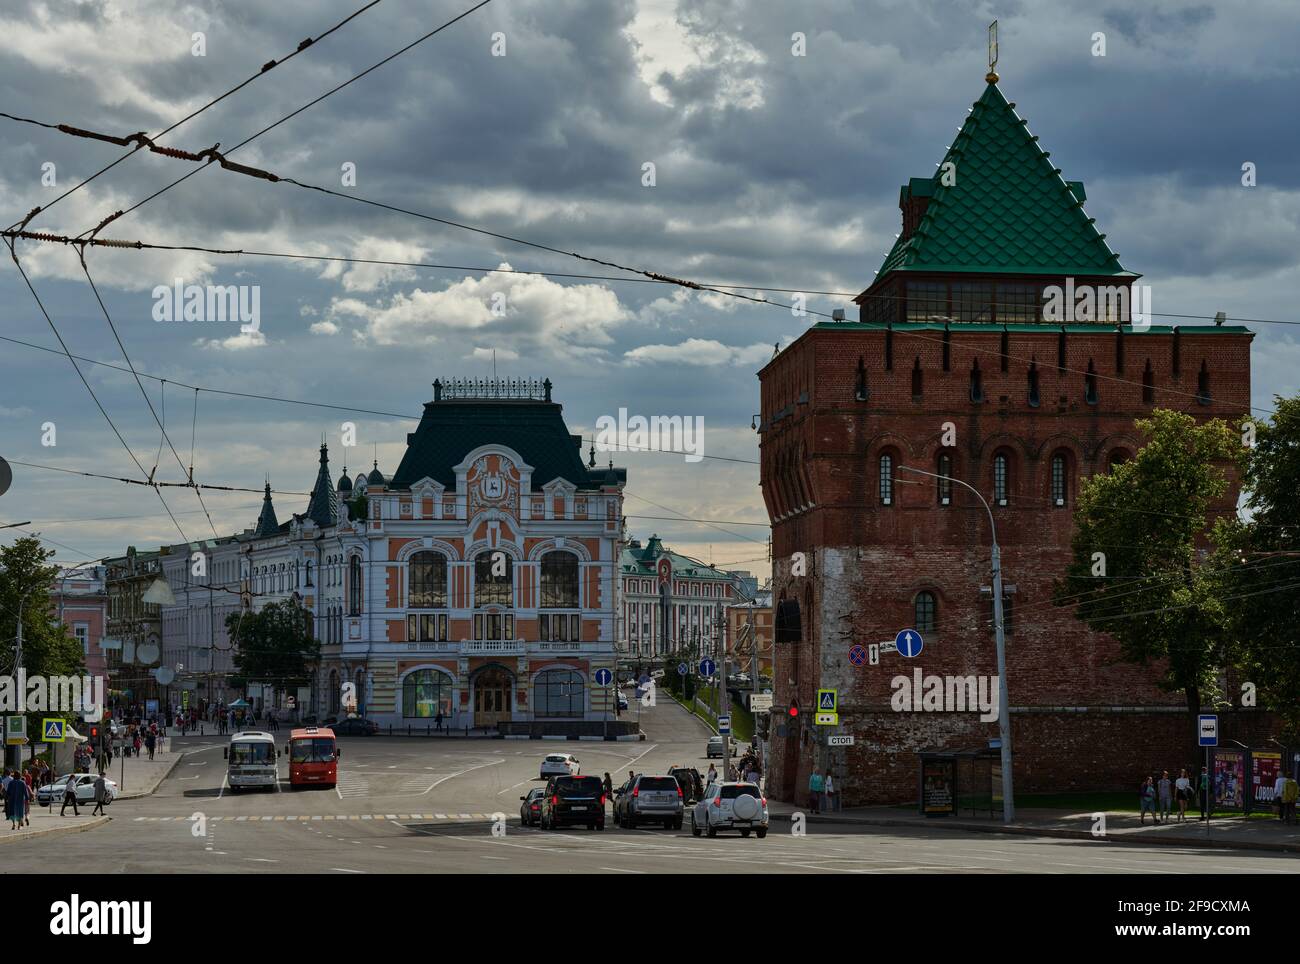 Vista del kremlin de ladrillo del siglo 16th, que forma las murallas de la ciudad del centro histórico de Nizhny Novgorod, y que fue renovado en el siglo 20th Foto de stock